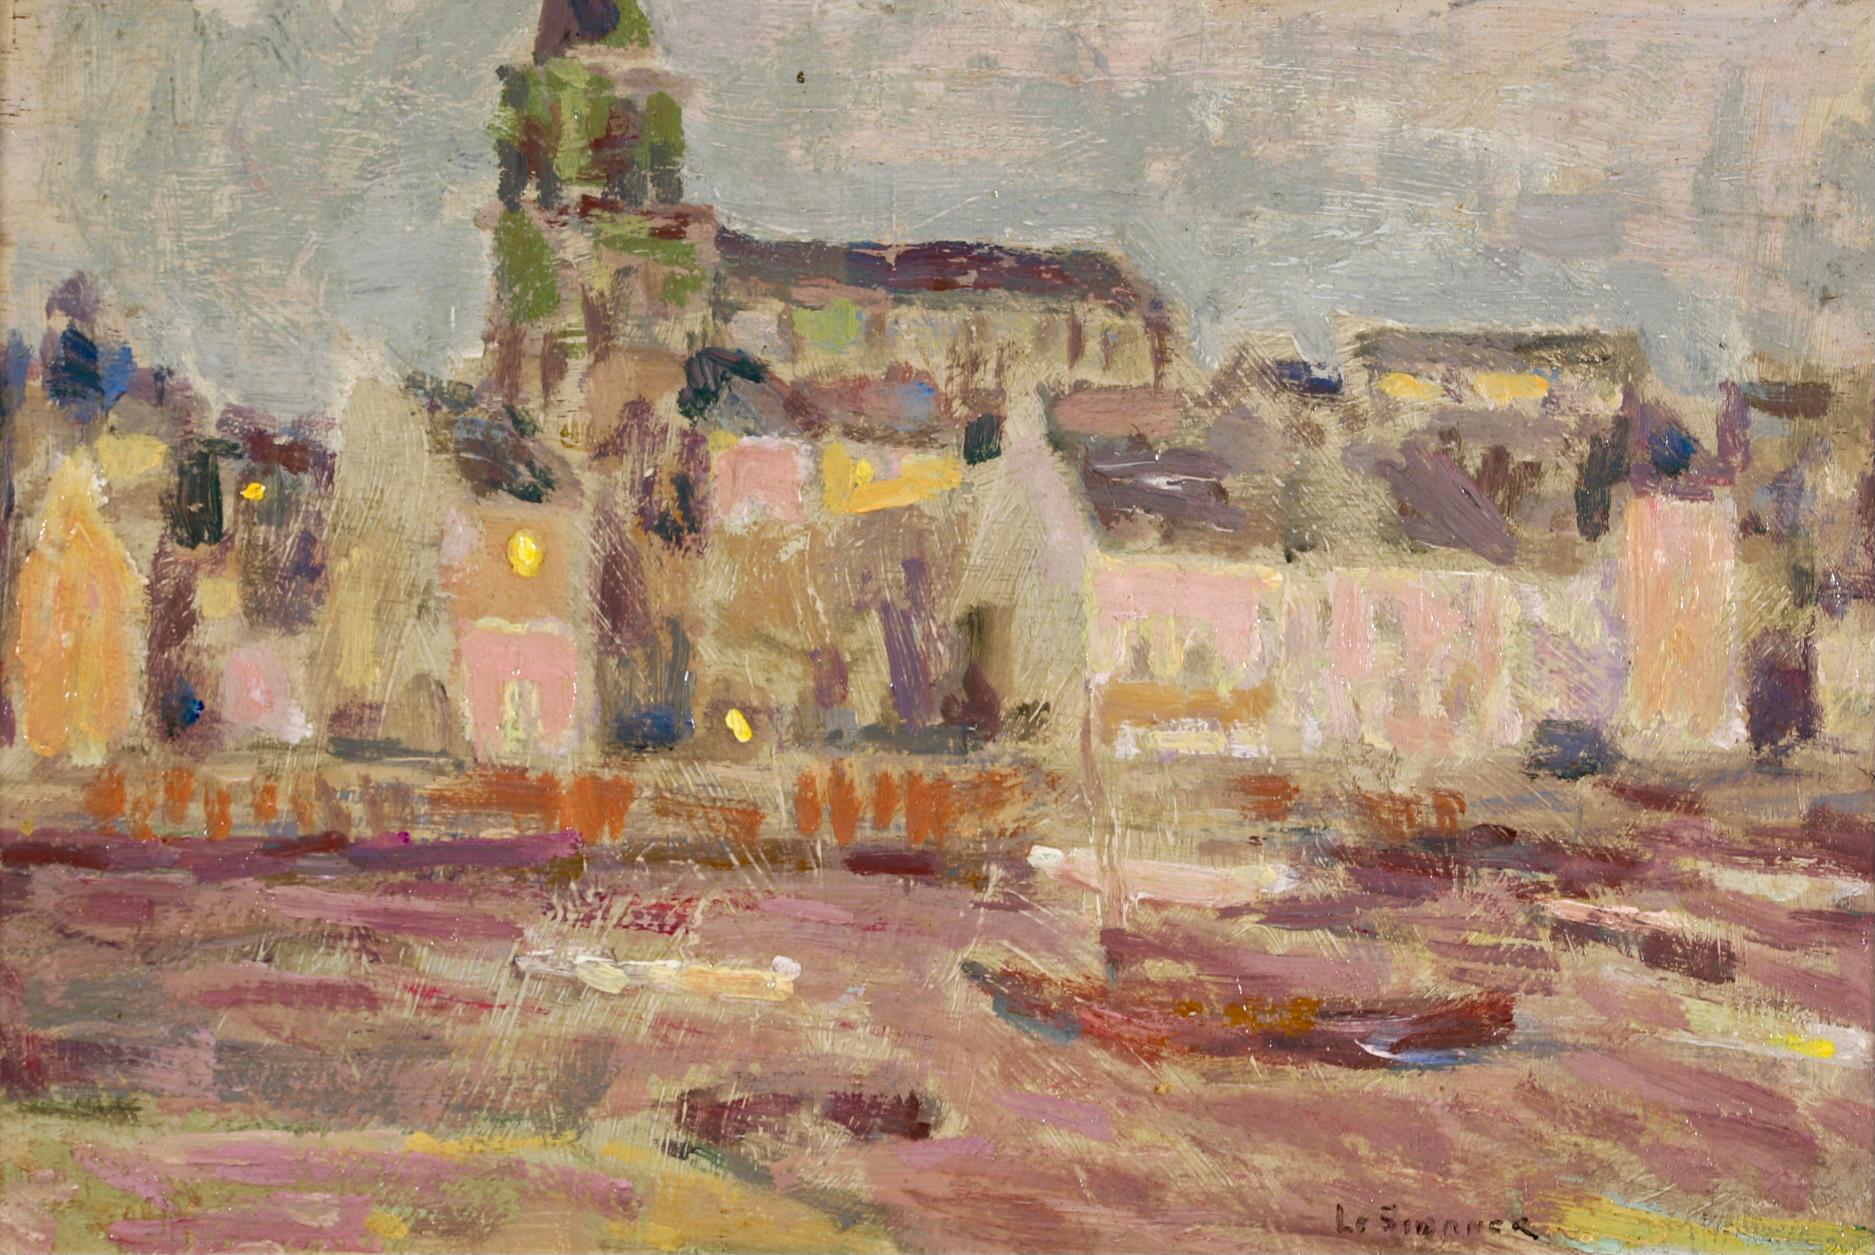 Saint Servan - Brittany - Post Impressionist Landscape by Henri Le Sidaner 1